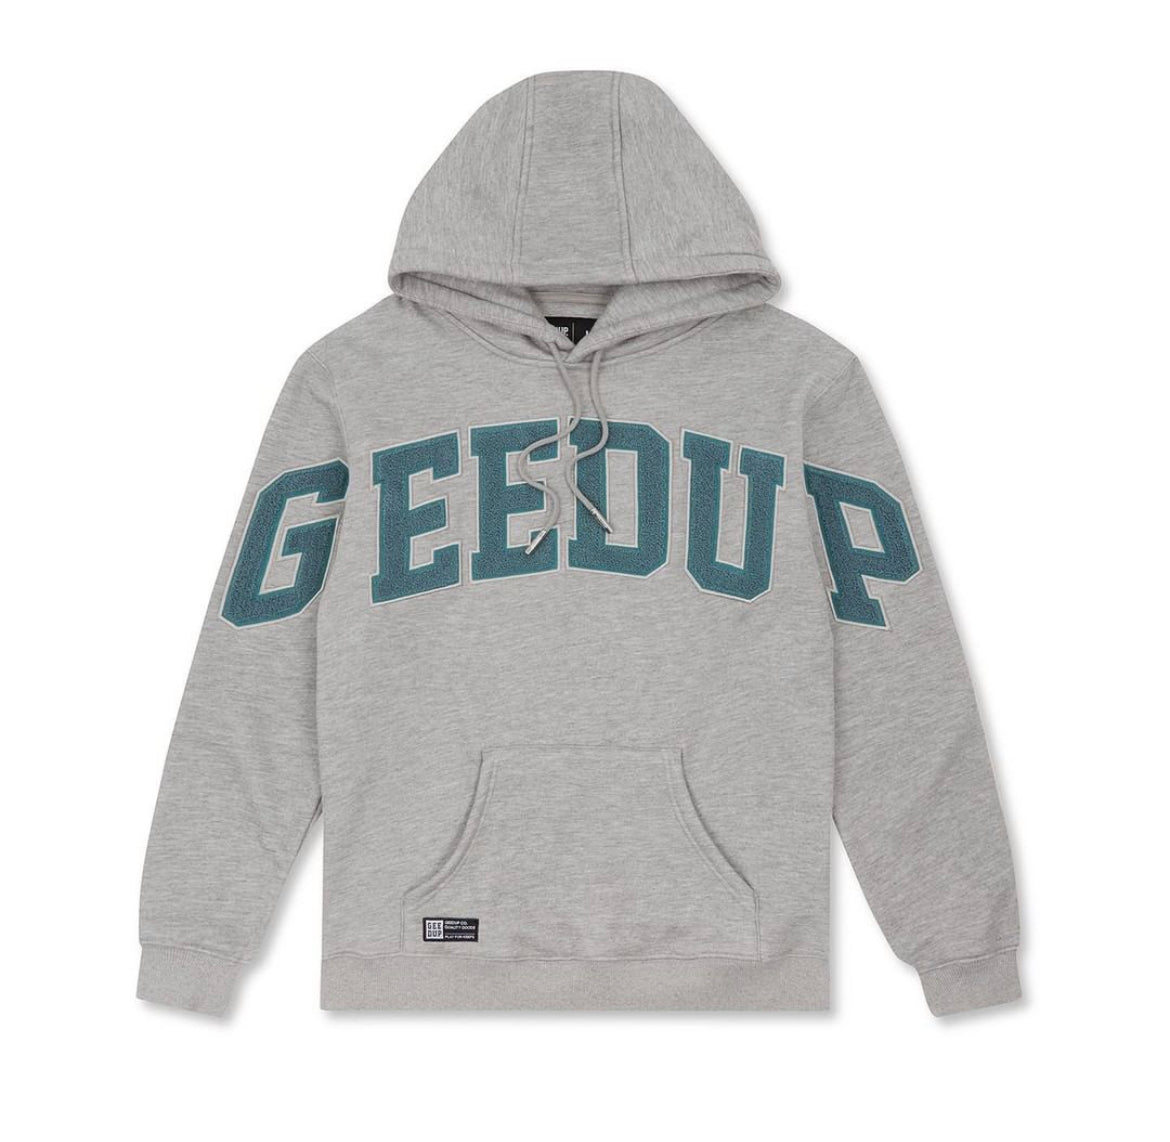 Geedup Team Logo Hoody - Grey Marle/Aqua Green - Clipped AU